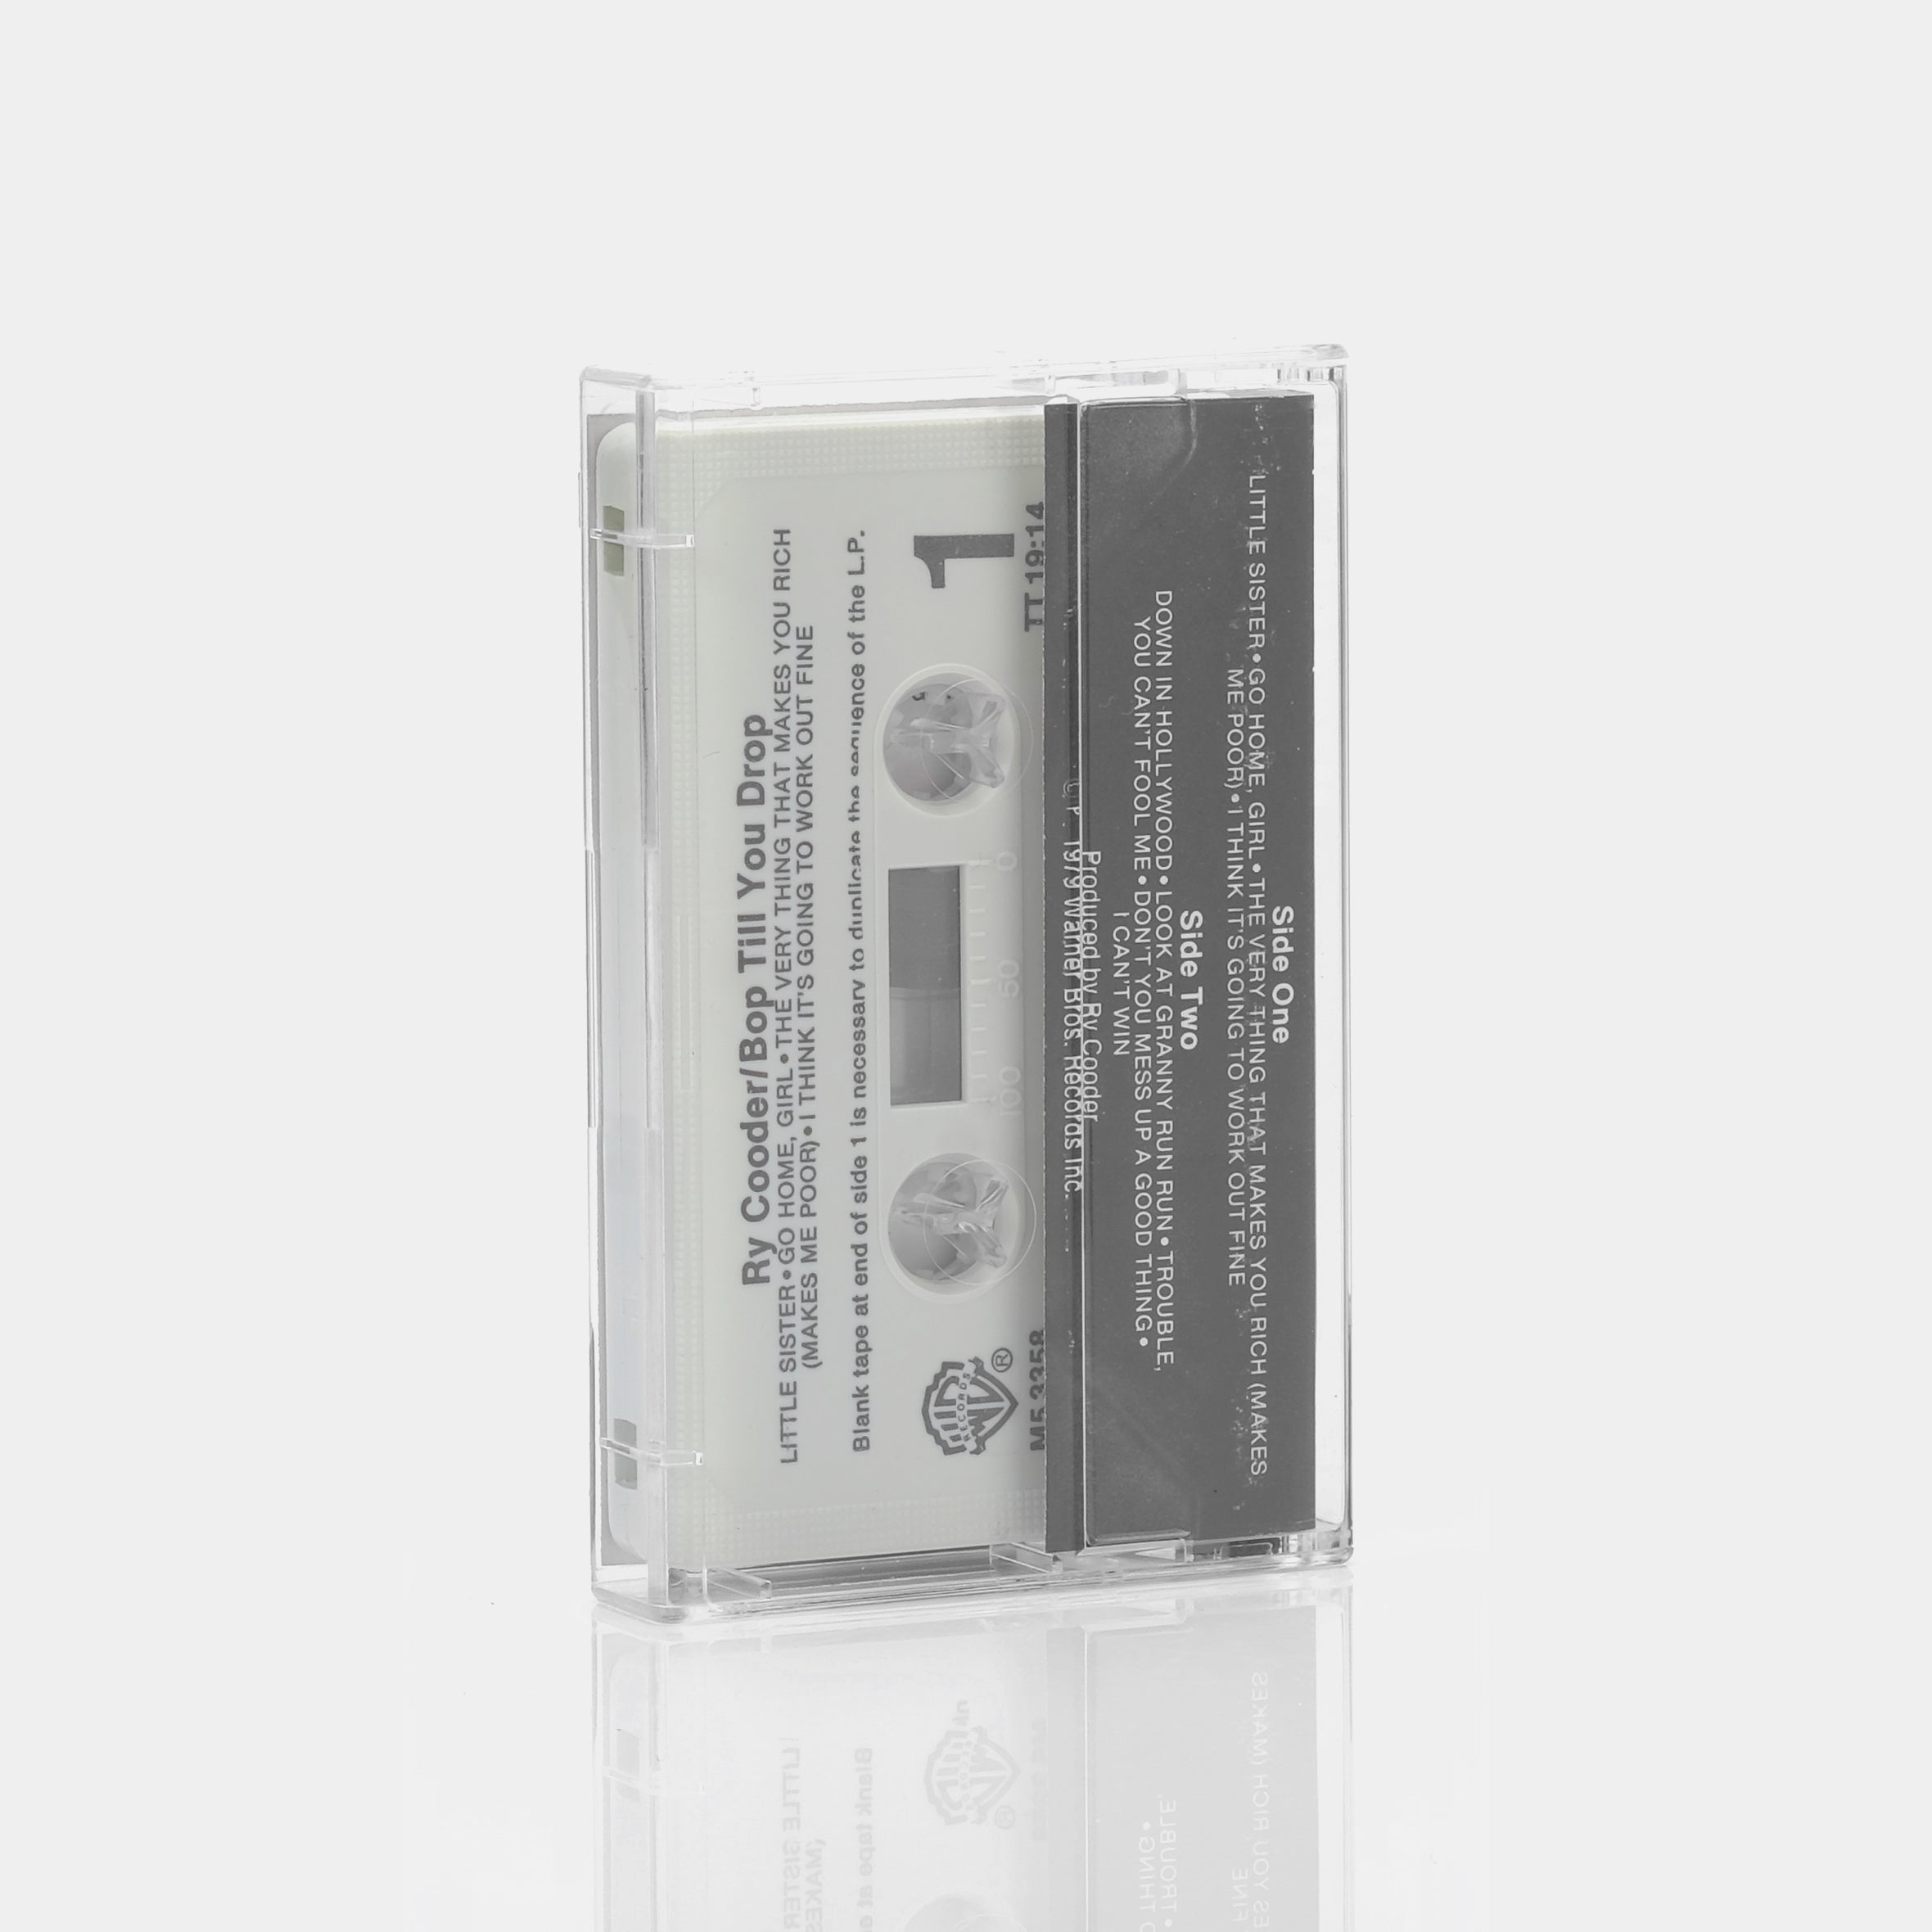 Ry Cooder - Bop Till You Drop Cassette Tape